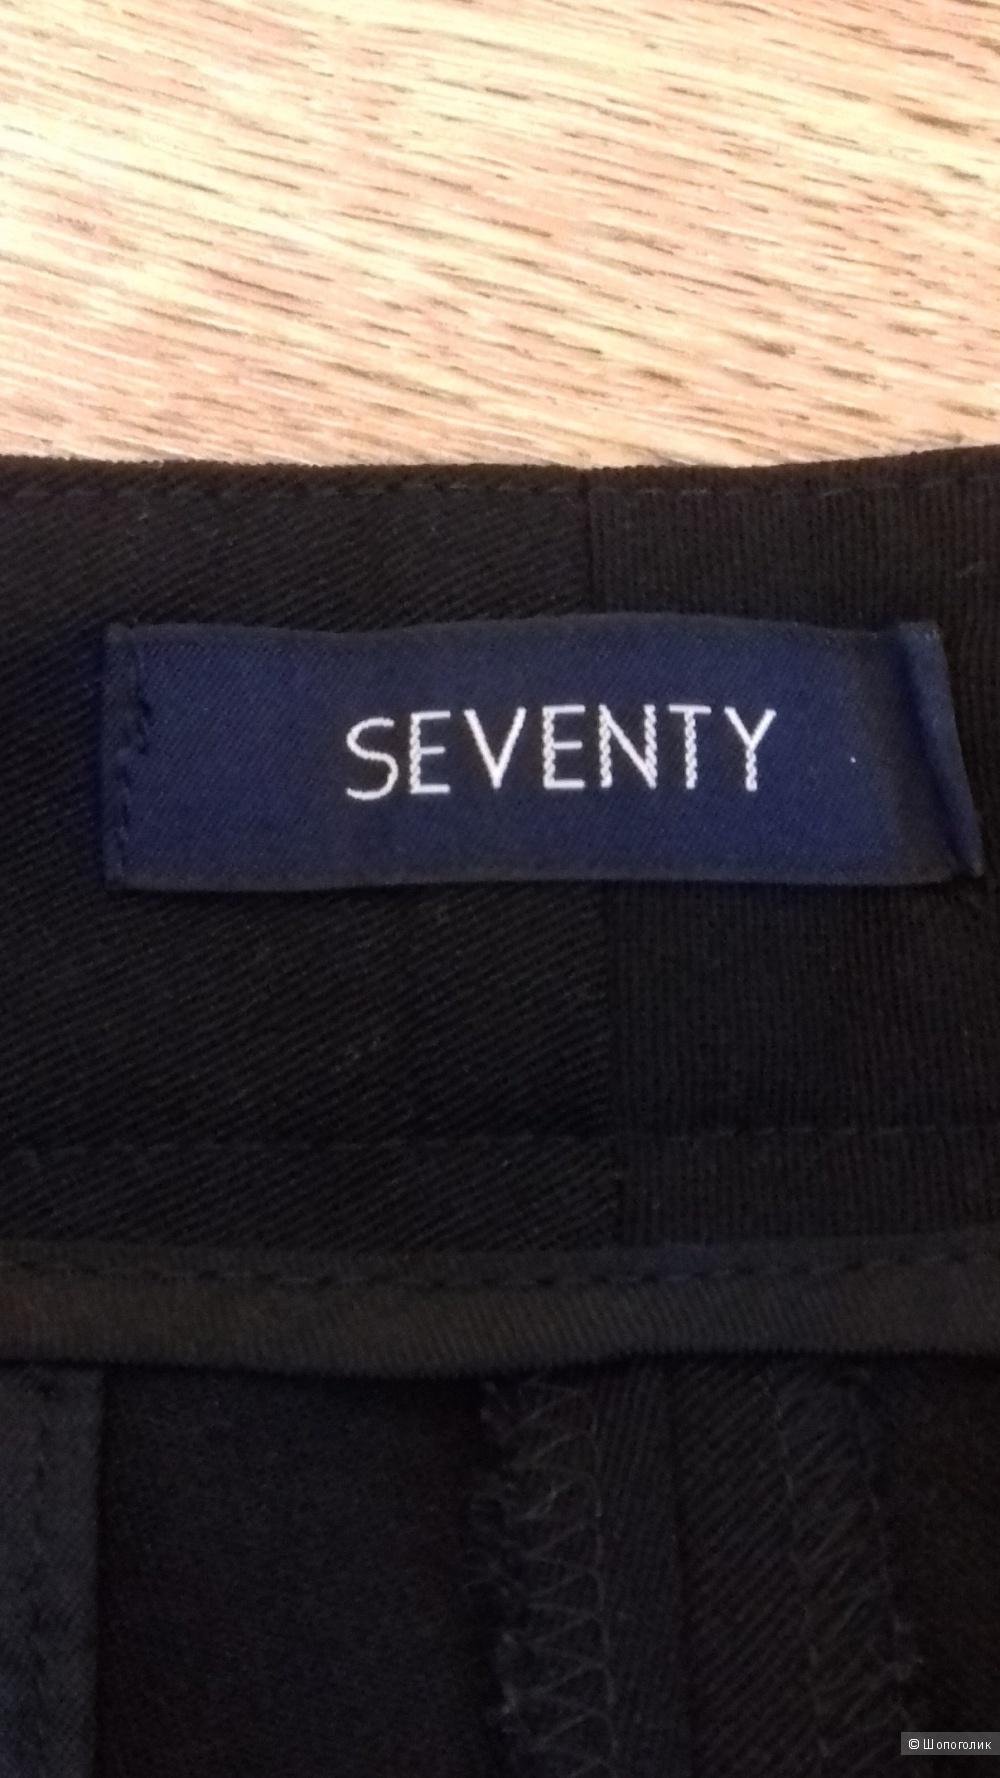 SEVENTY, удлинённые шорты из вирджинской шерсти, Италия, размер 42IT